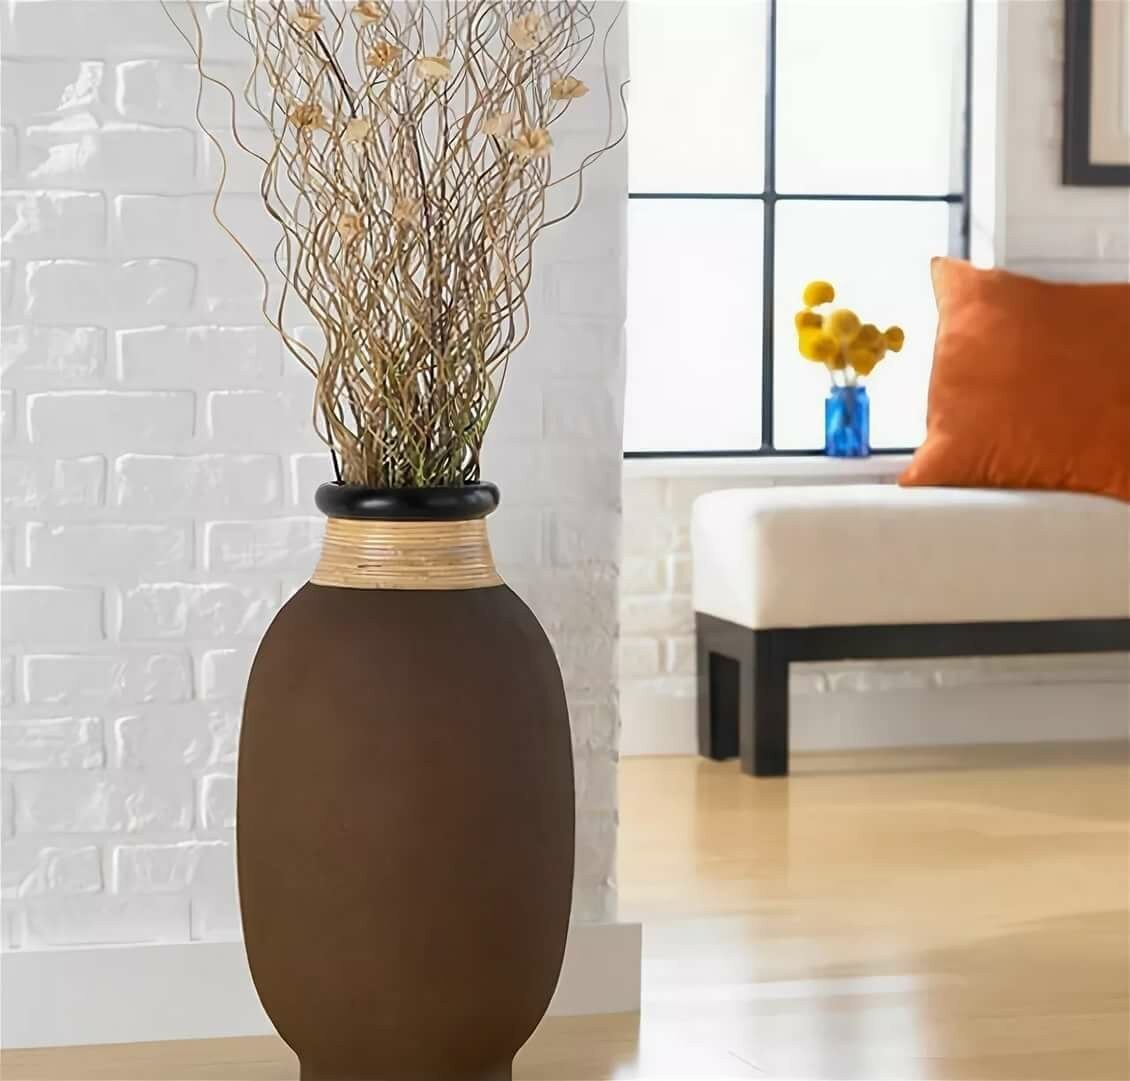 Напольные вазы в интерьере гостиной